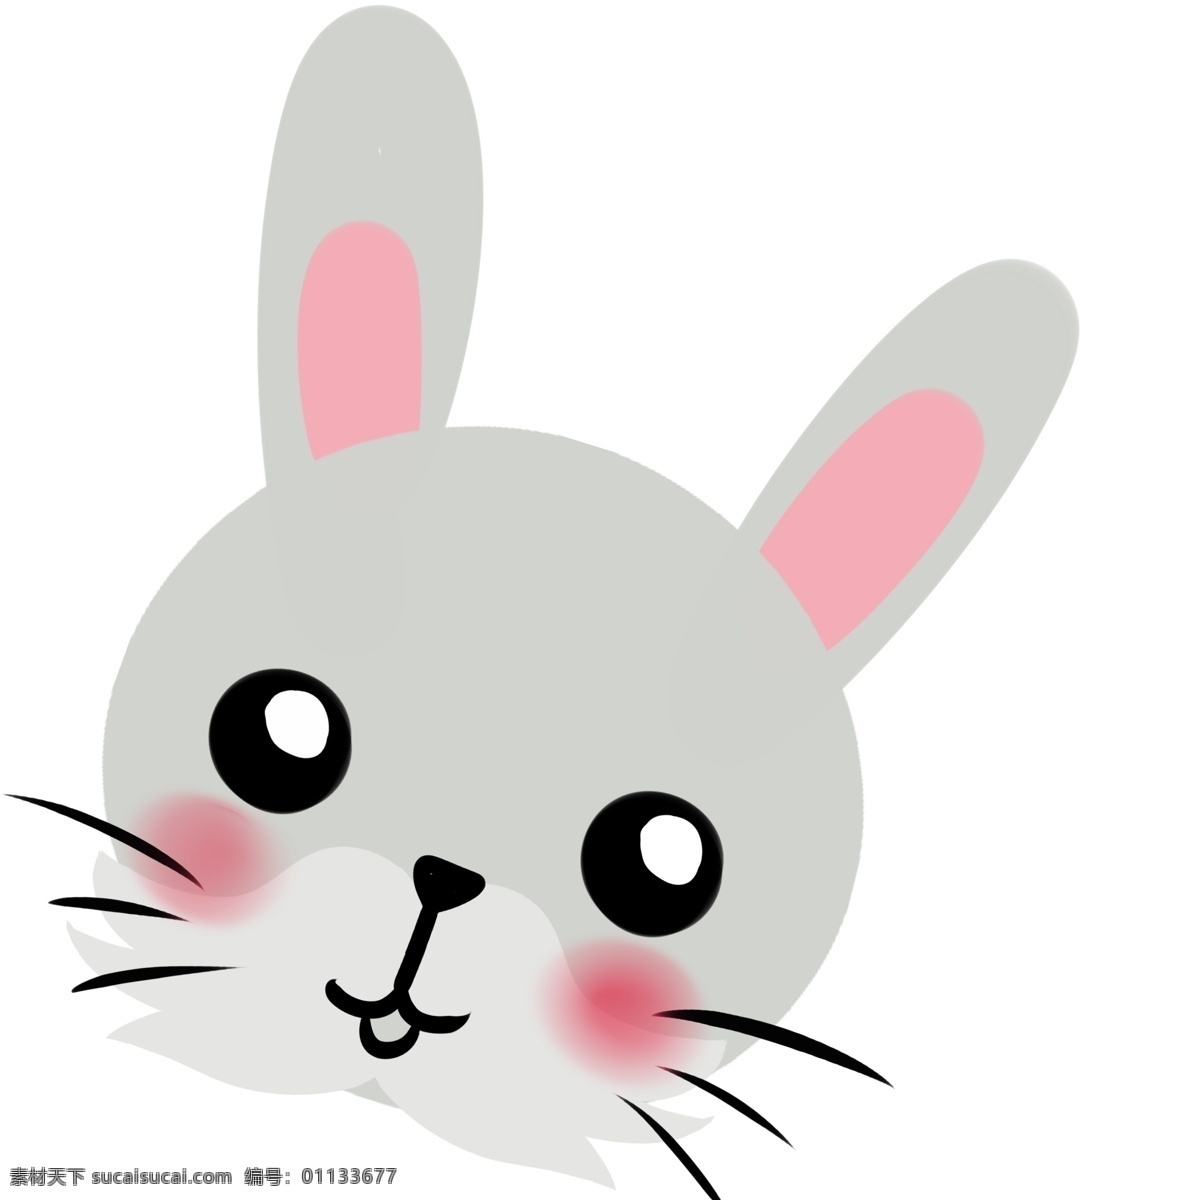 灰色 大 耳朵 复活节 兔子 灰色兔子 卡通手绘 矢量装饰 海报宣传 平面装饰 复活节岛